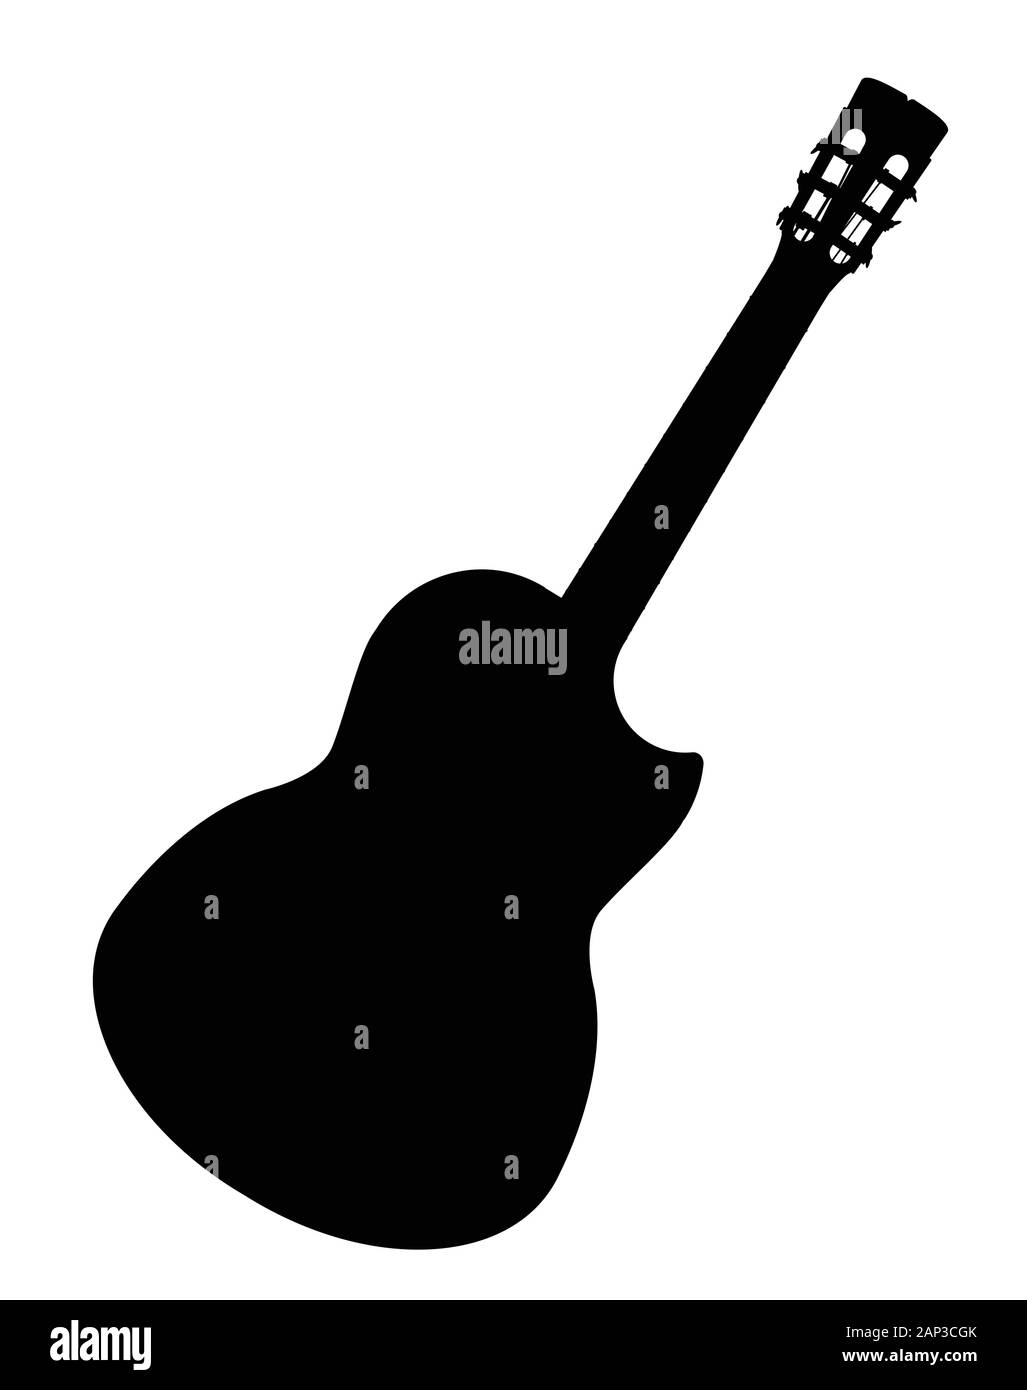 Une guitare acoustique flamenco espagnol typique isolé sur un fond blanc. Illustration de Vecteur